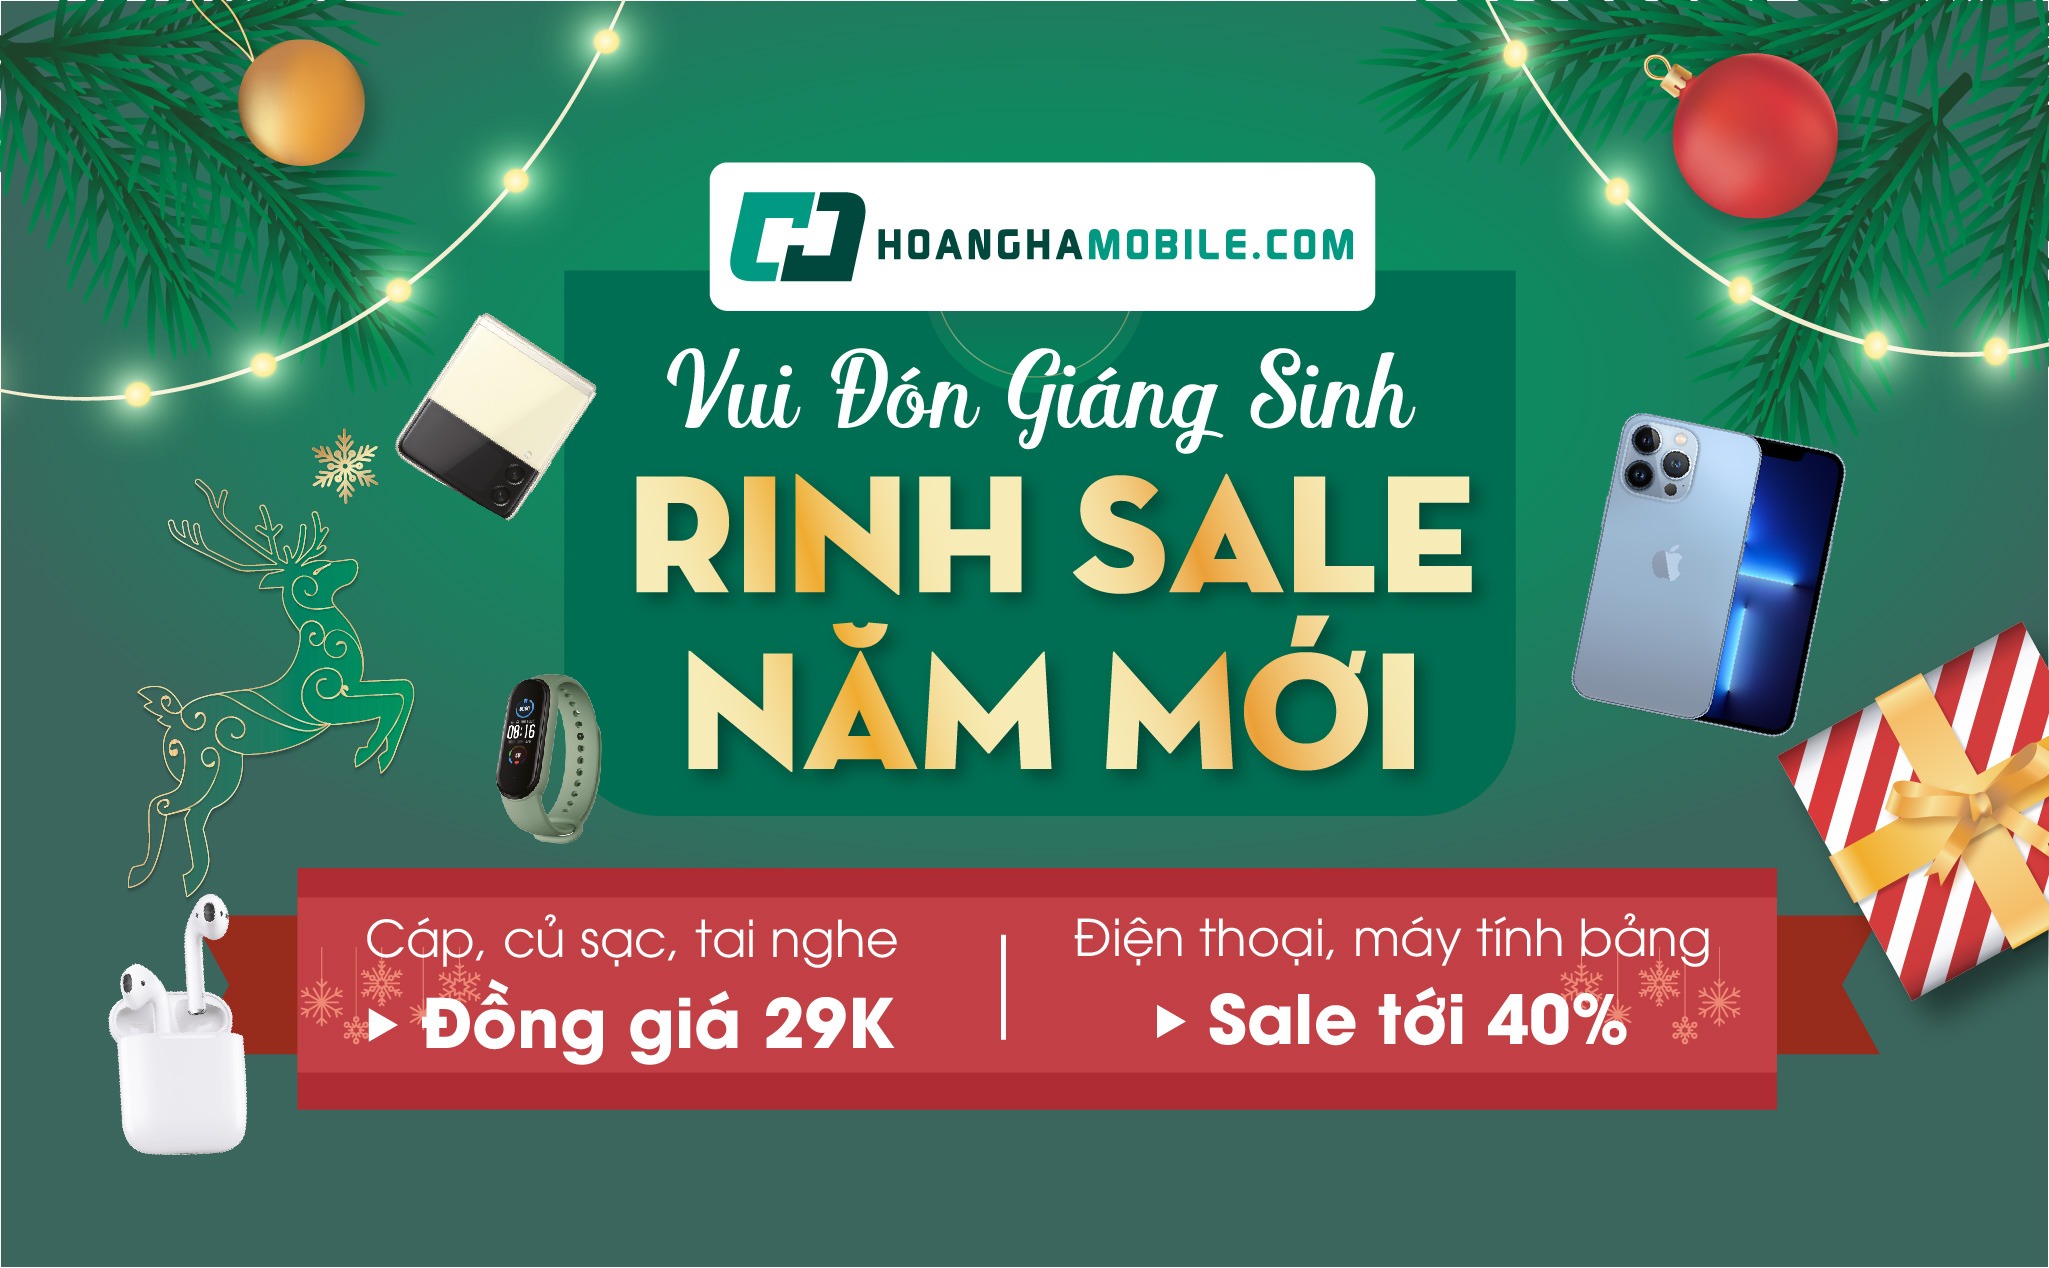 [QC] Vui Đón Giáng Sinh - Rinh Sale Năm Mới: Săn đồ công nghệ ưu đãi tới 40% tại Hoàng Hà Mobile